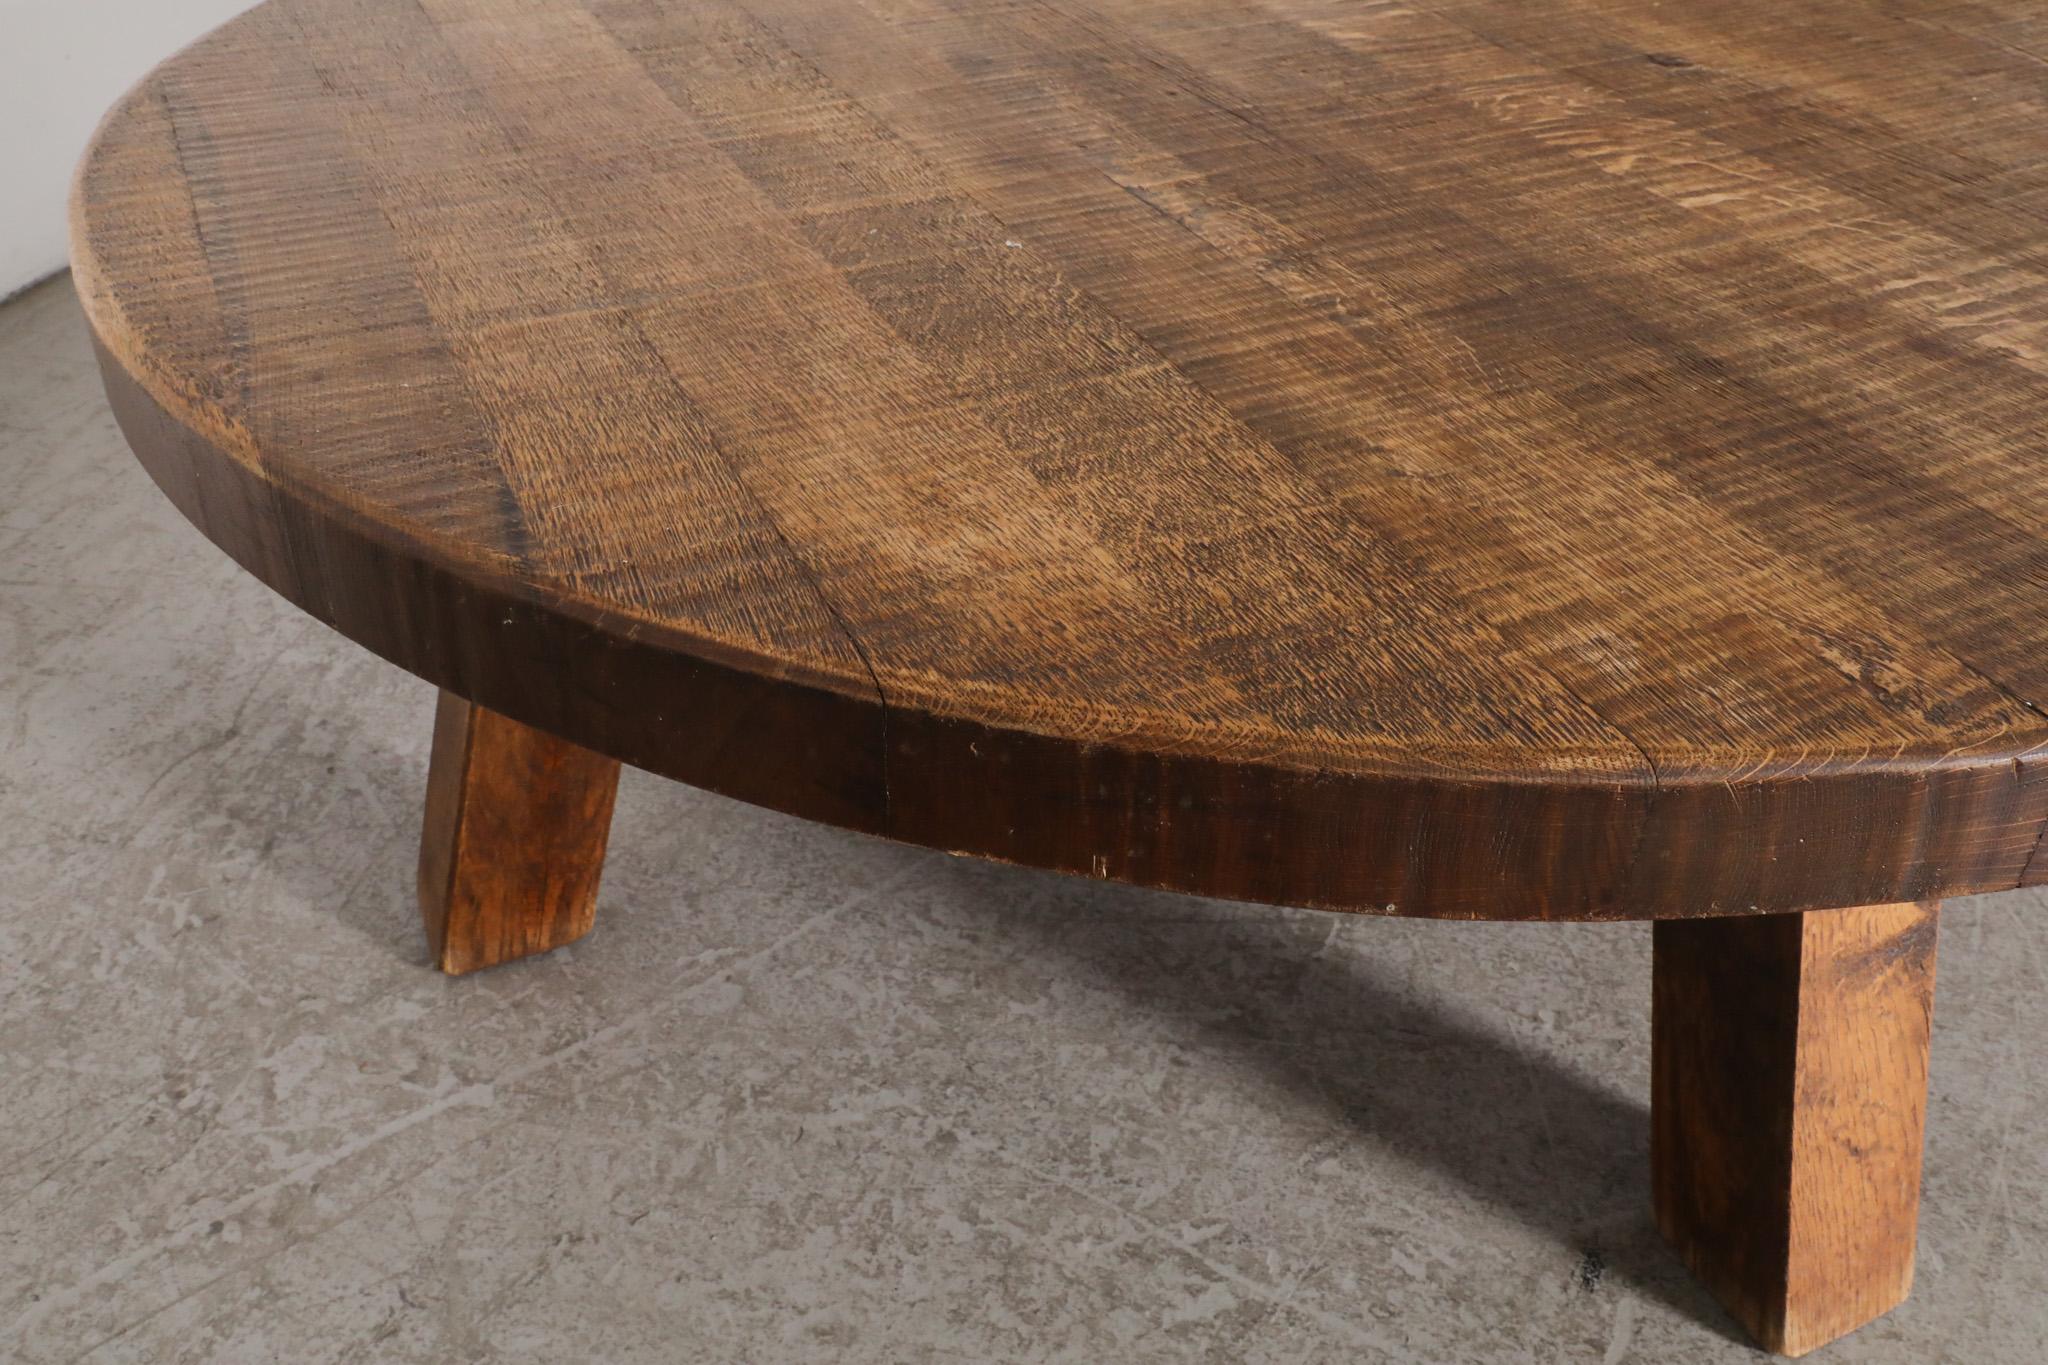 Pierre Chapo Inspired Heavy Oak Brutalist Coffee Table 2